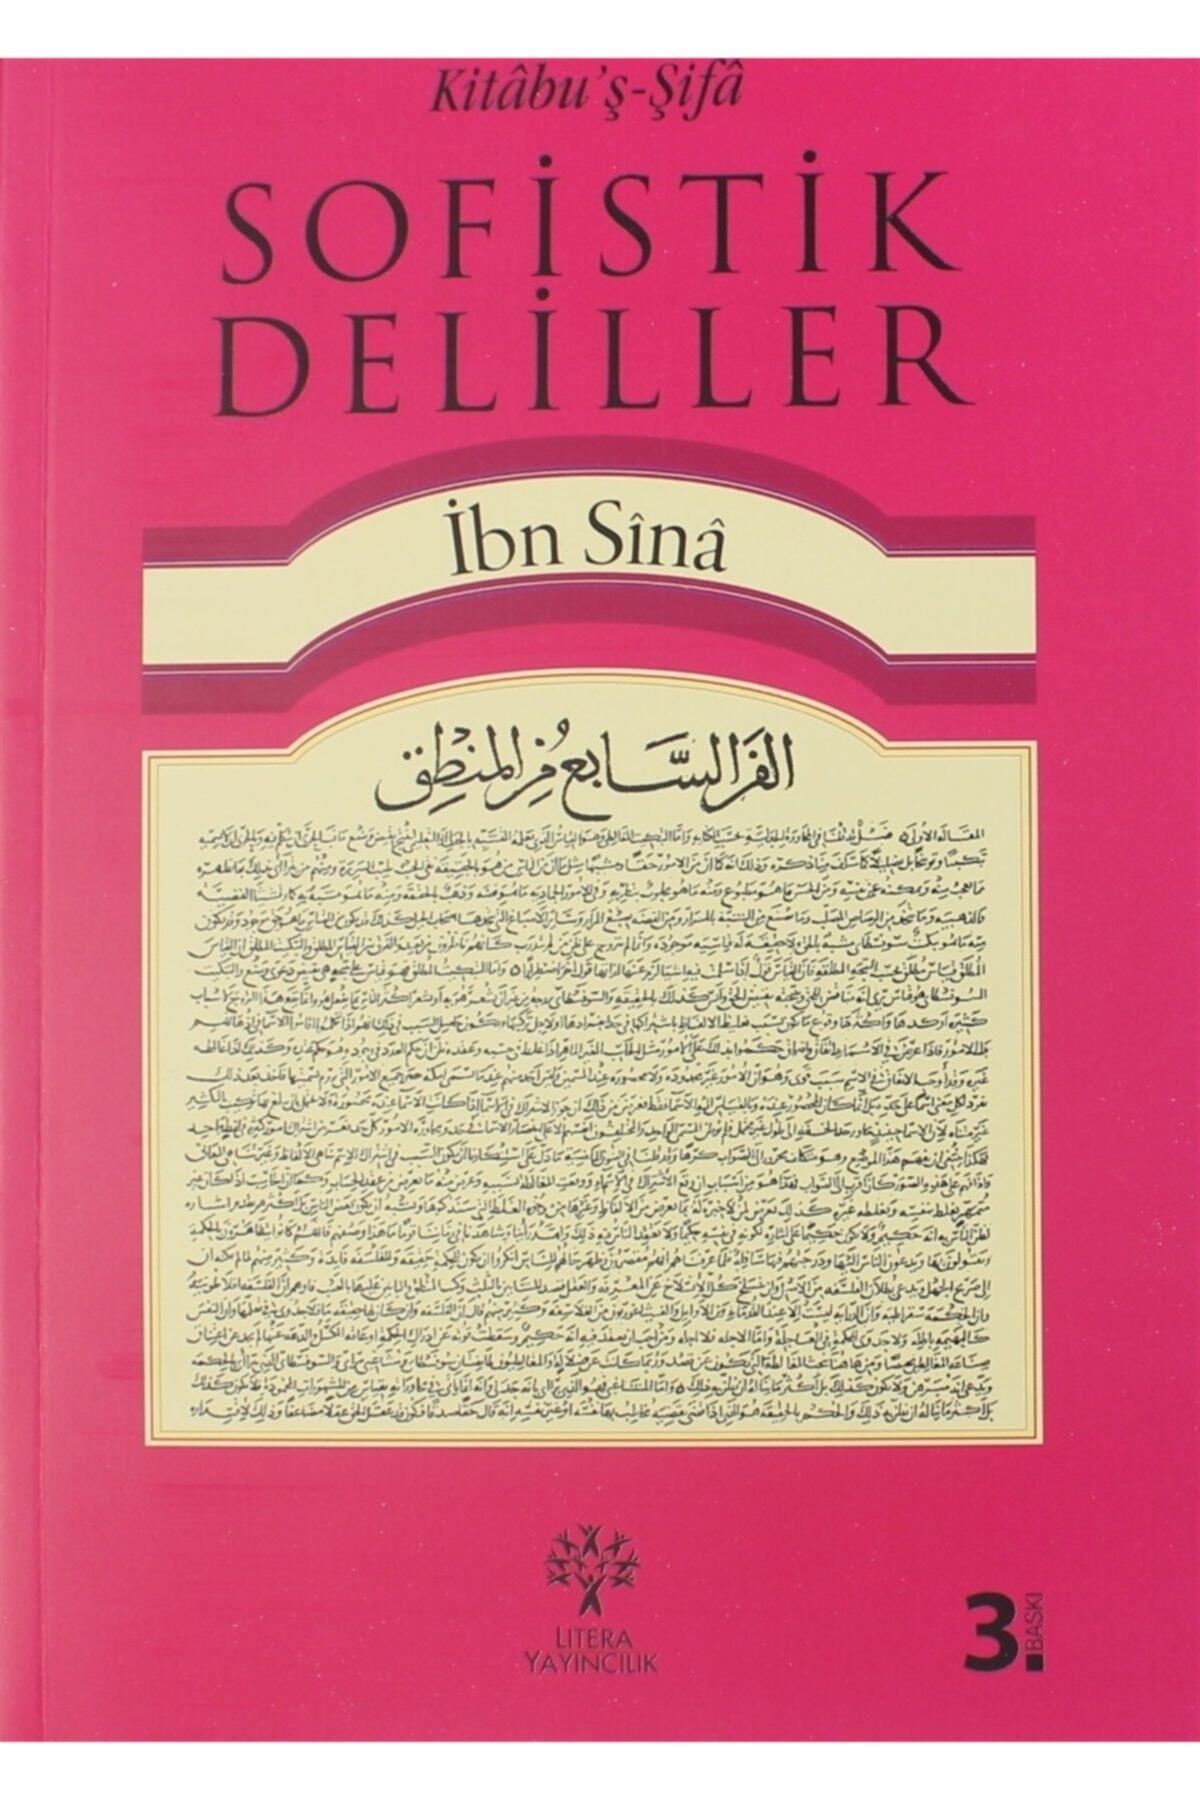 Litera Yayıncılık Kitabu'ş-şifa - Sofistik Deliller - İbn Sina